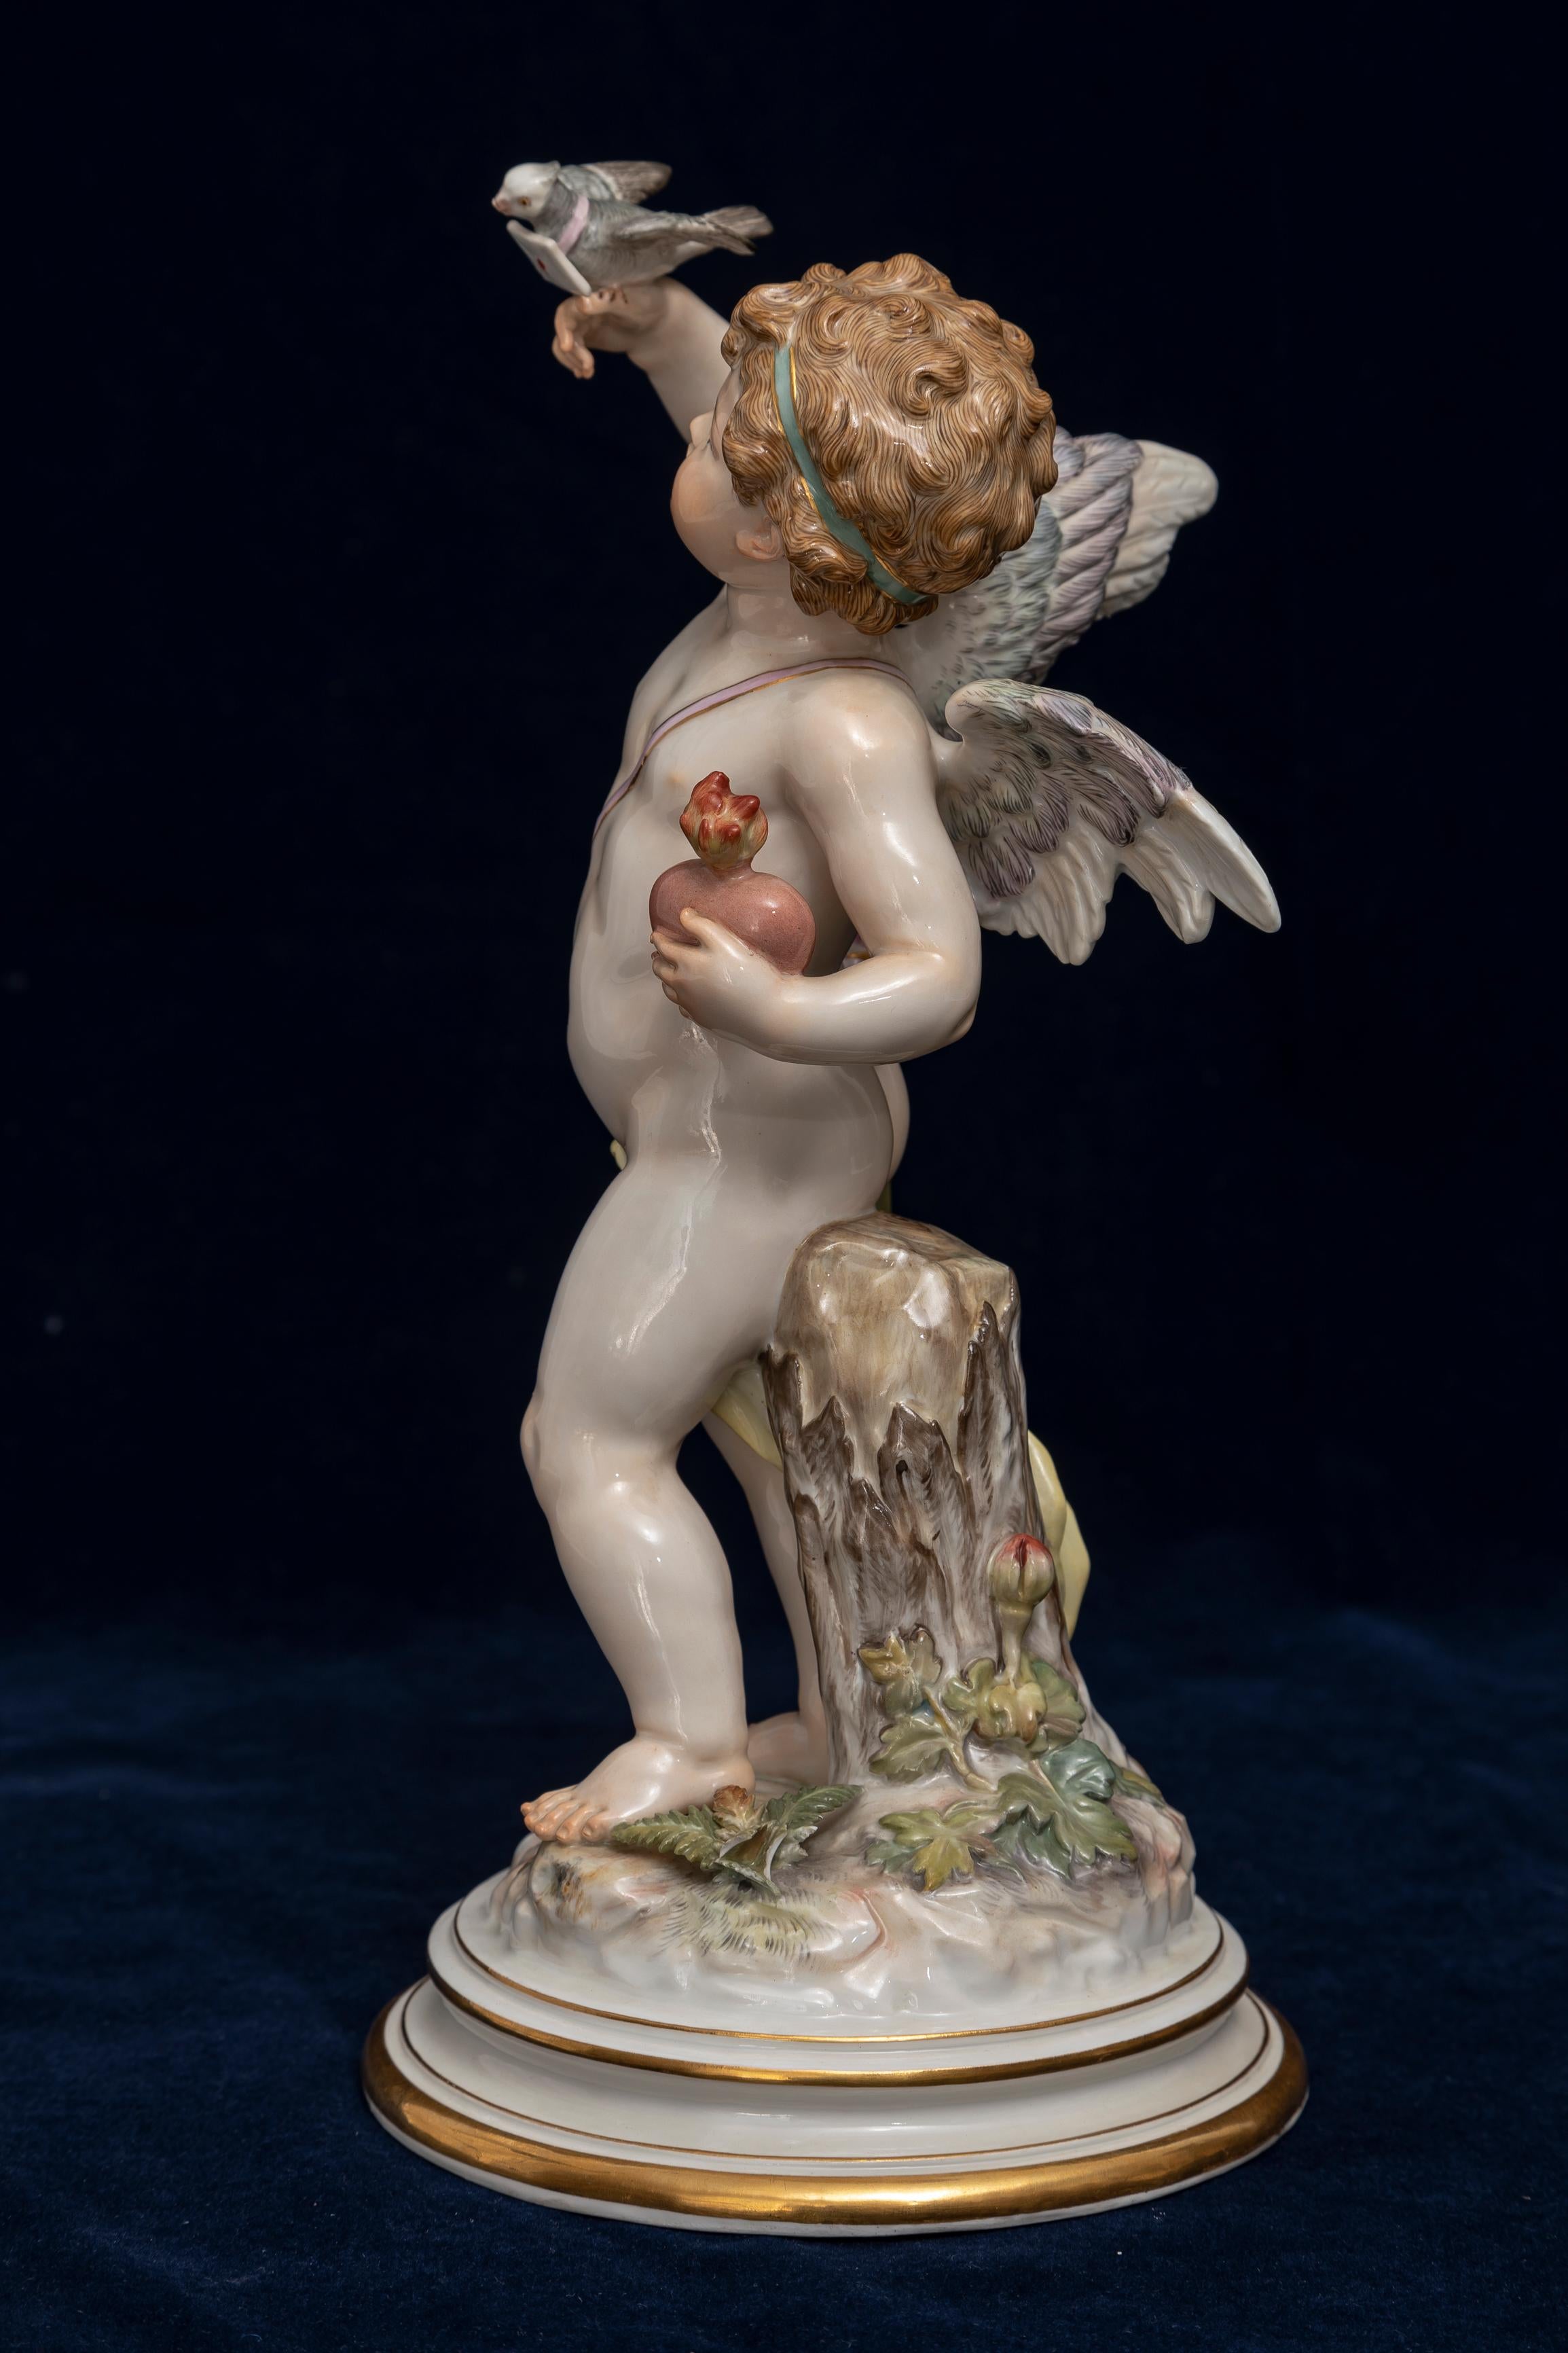 Porcelaine de Meissen, Série Amour : Cupidon envoyant une lettre d'amour avec l'oiseau de l'amour C1870, SUPRÊME

Figurine en porcelaine de Meissen de la série Love : Cupidon envoyant une lettre d'amour avec un oiseau d'amour. Circa 1870, cette